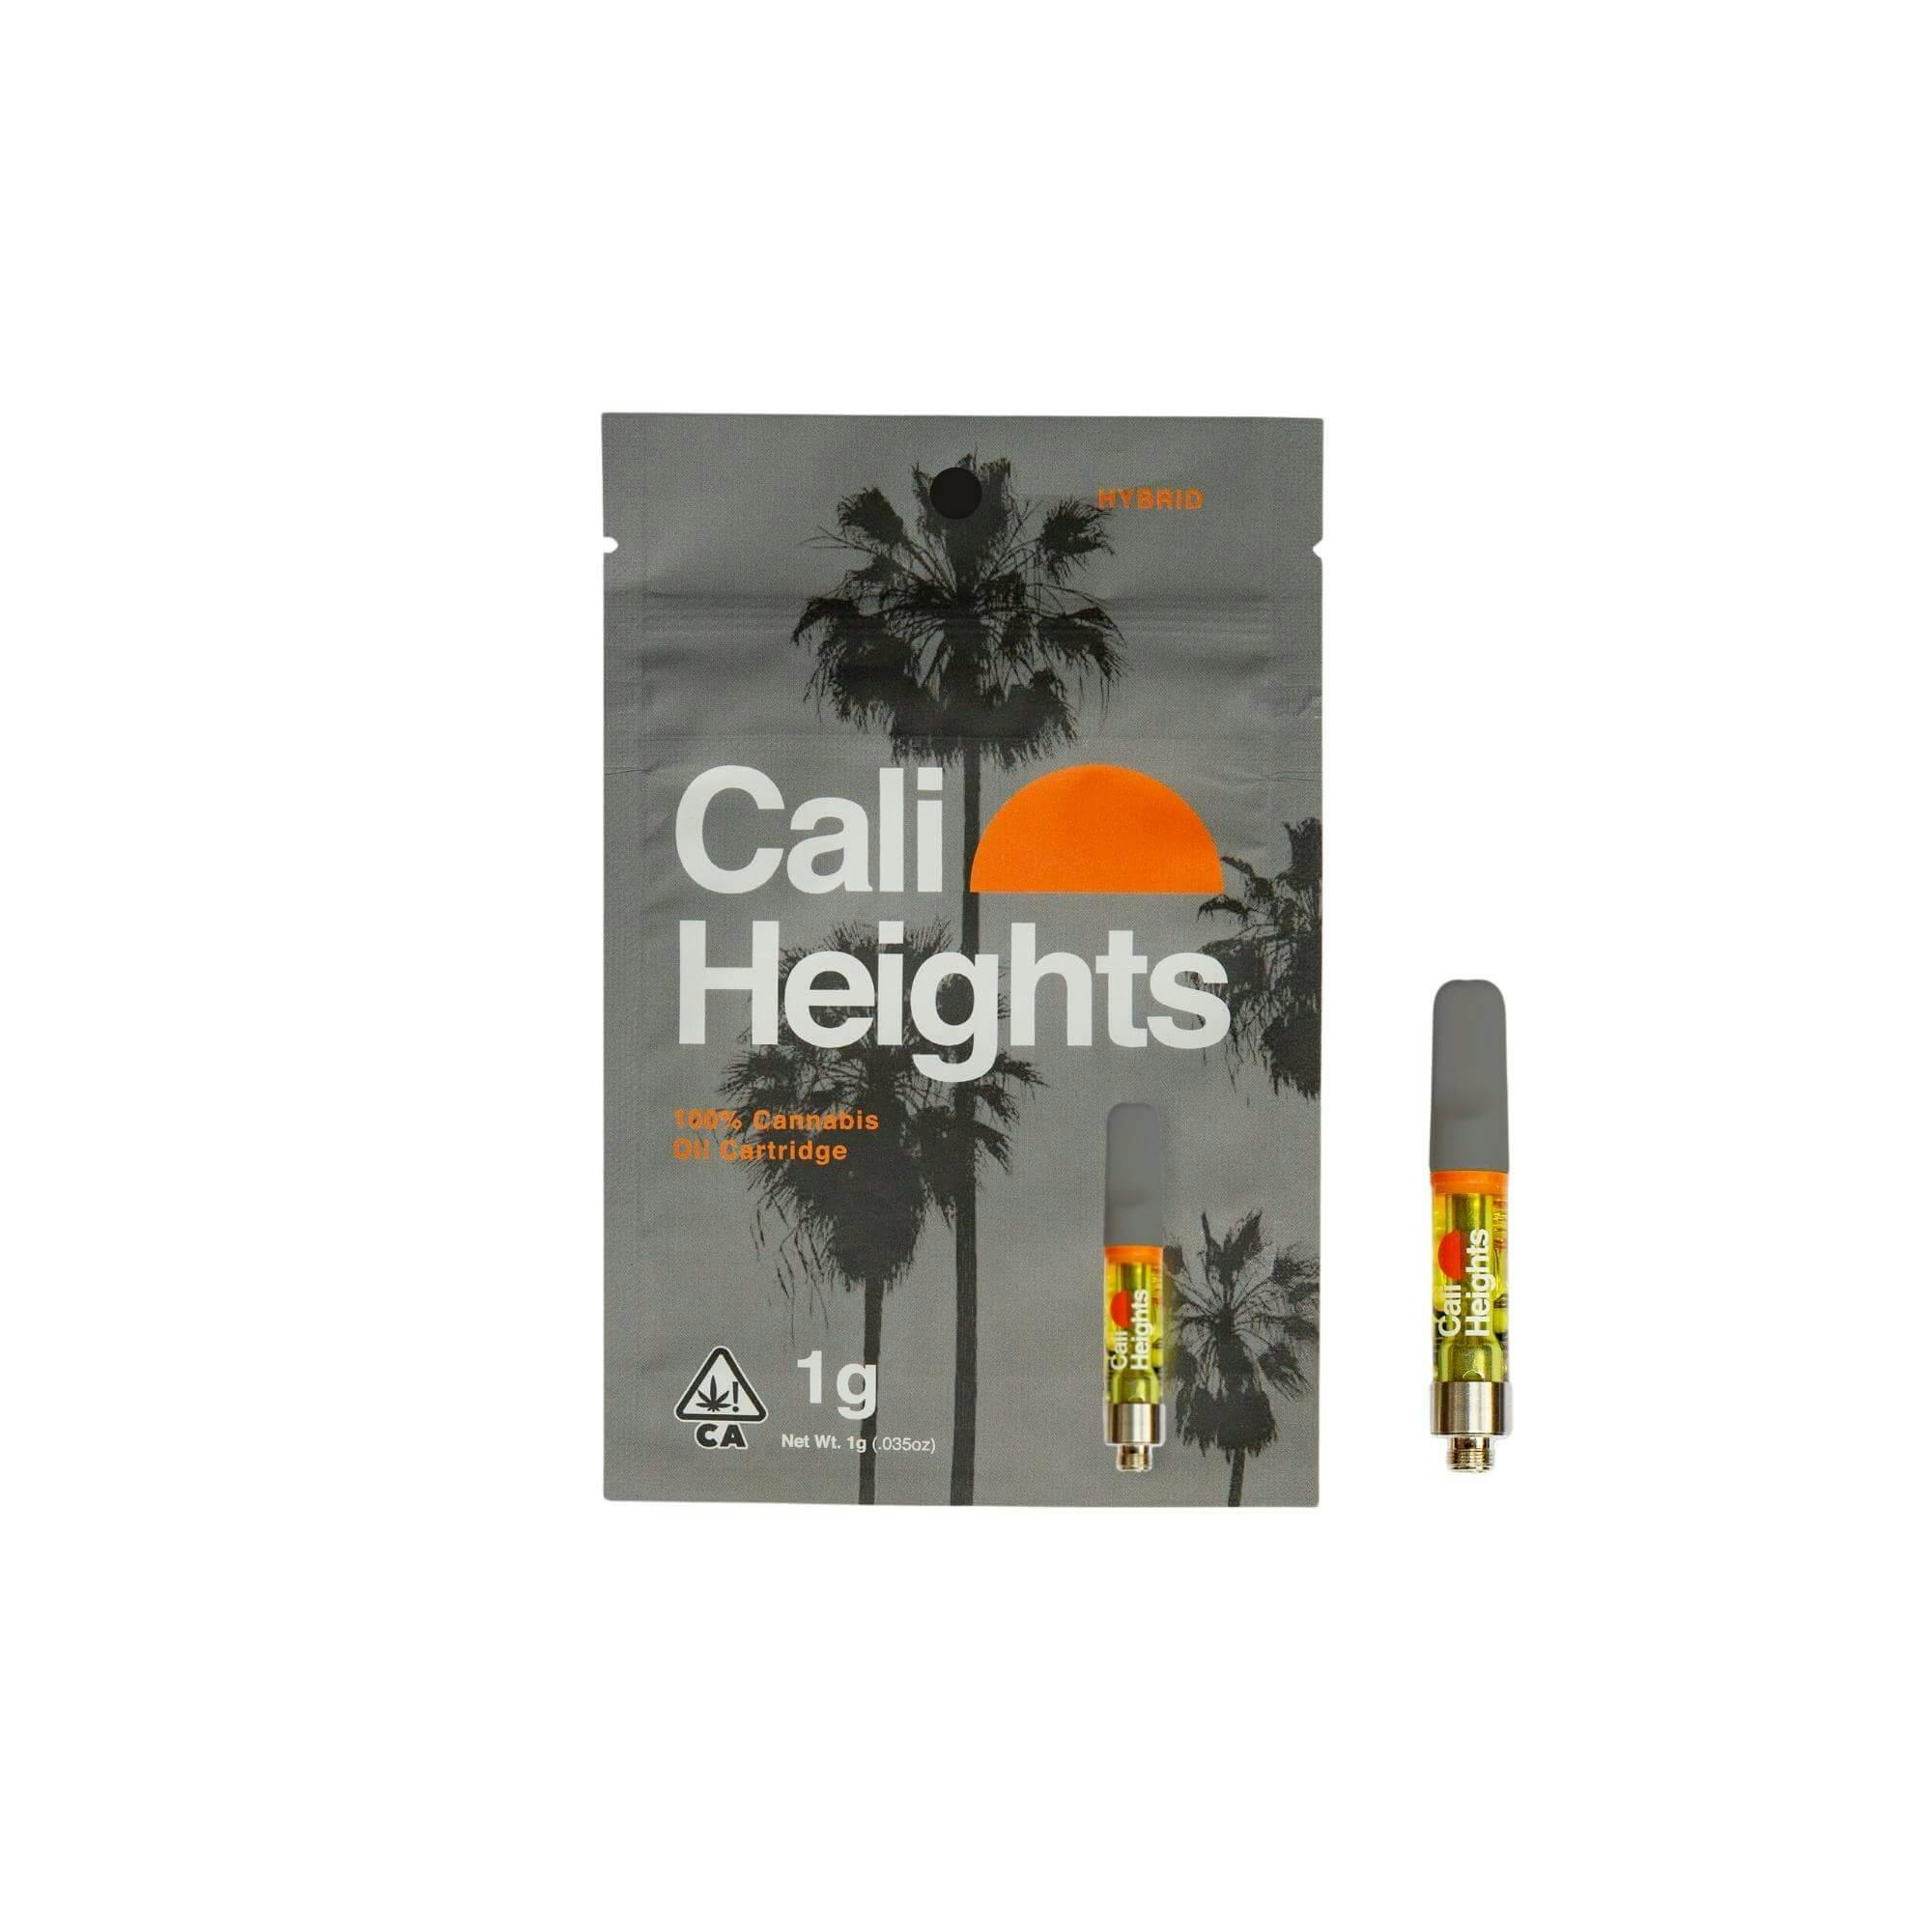 Cali Heights | SFV OG | 1G Cart